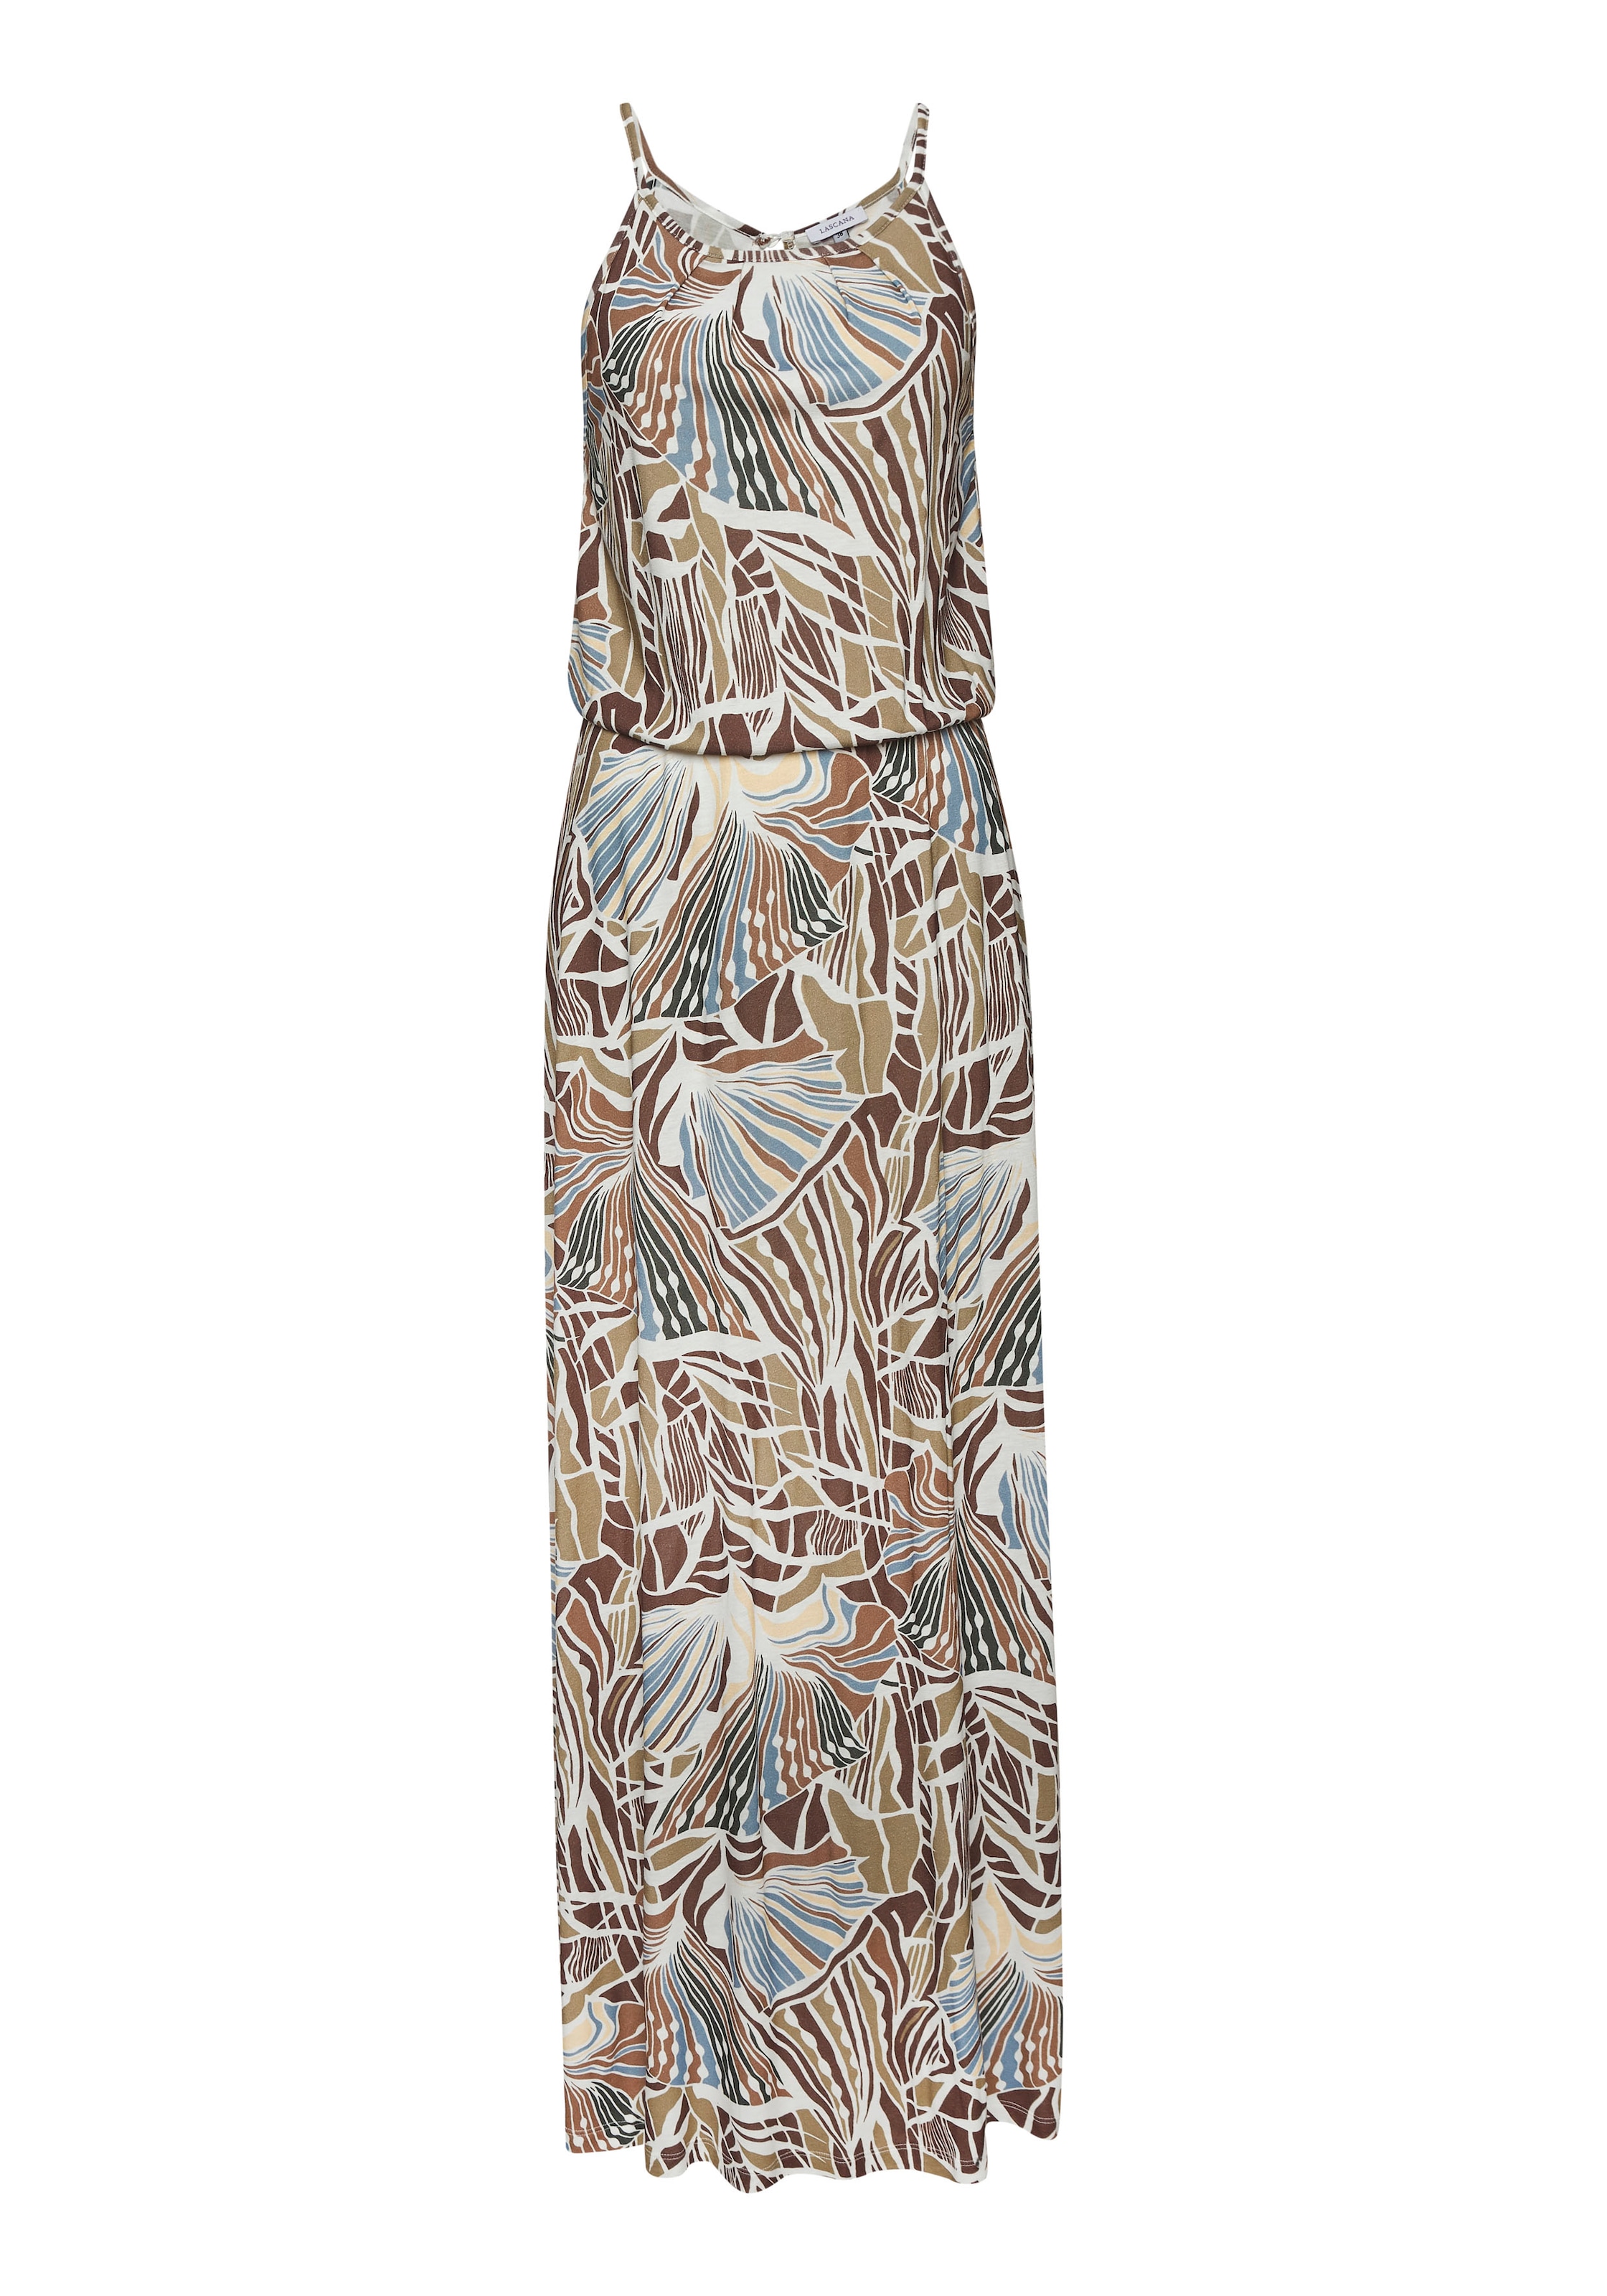 LASCANA Maxikleid, leichtes Sommerkleid mit Alloverprint, fliessendes Strandkleid